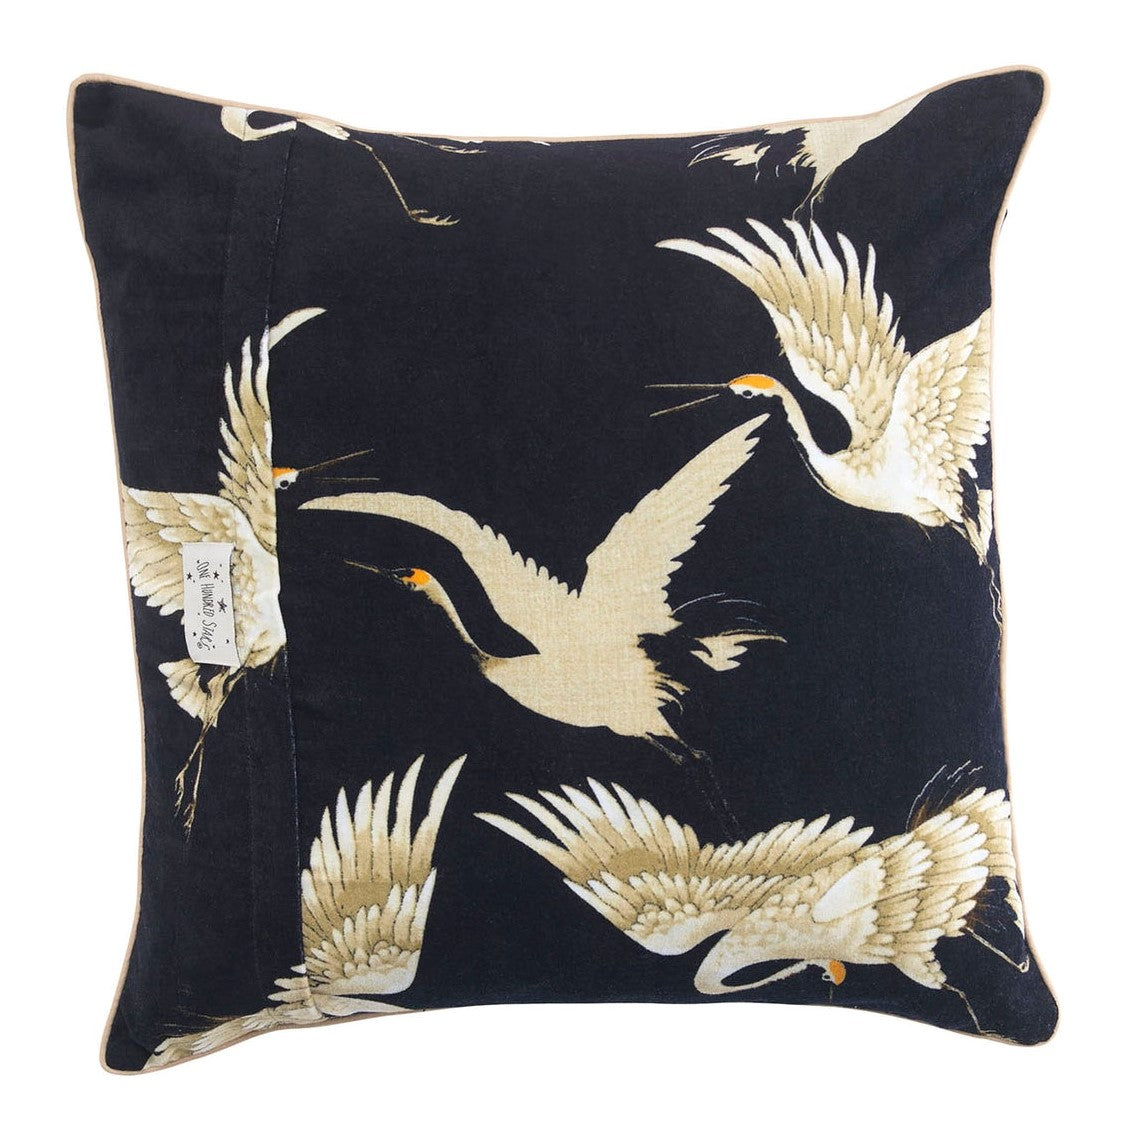 One Hundred Stars Black Stork Cushion Cover 50 x 50cm